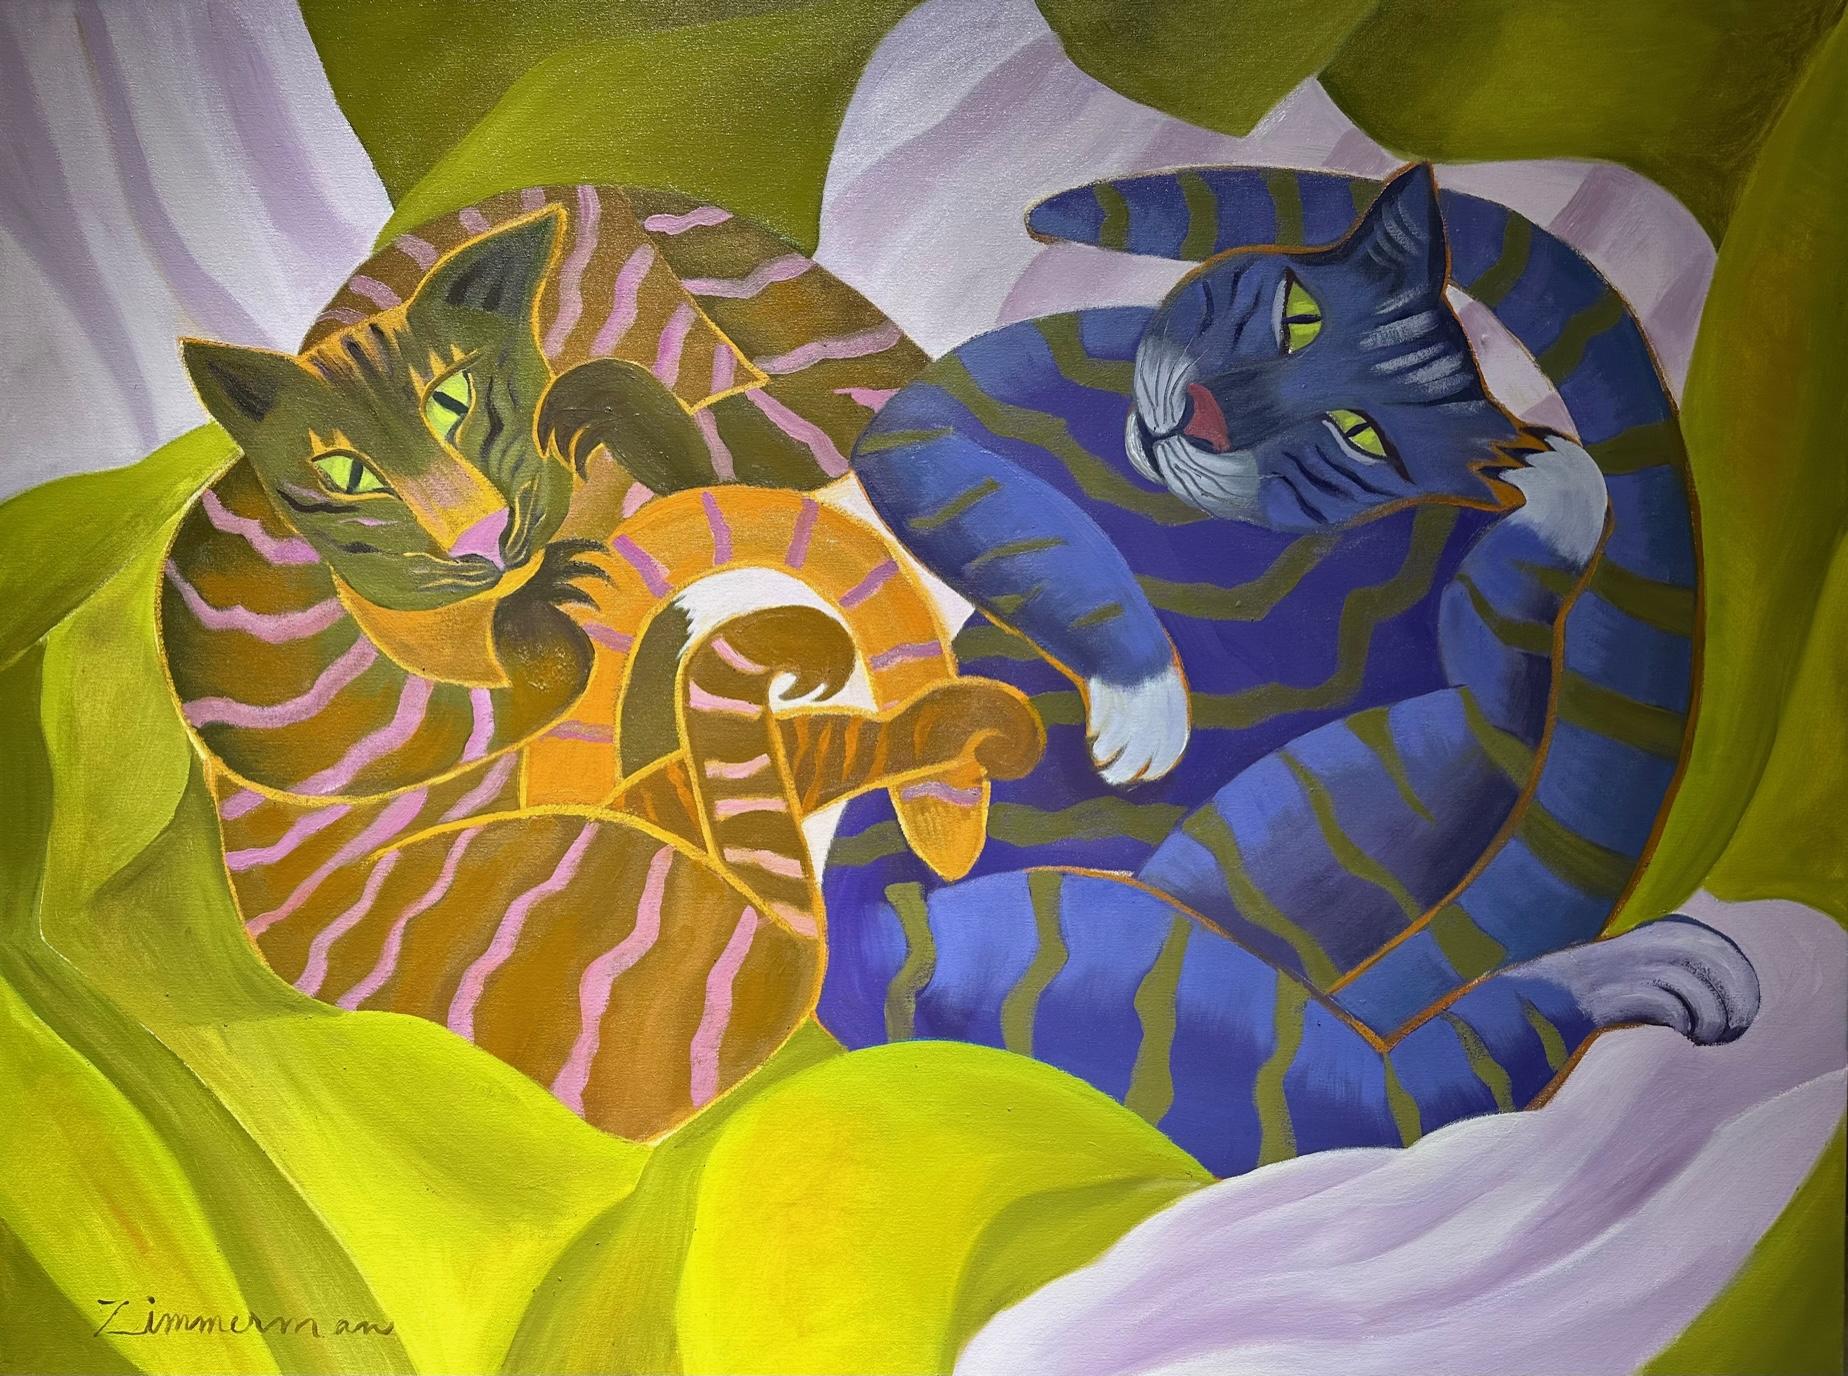 Double Trouble" ist ein fröhliches und lebendiges Gemälde, das die verspielte und neugierige Natur von Katzen in einer schönen Umgebung einfängt.

Double Trouble" fügt jedem Raum einen Hauch von Laune und Farbe hinzu und schafft gleichzeitig eine